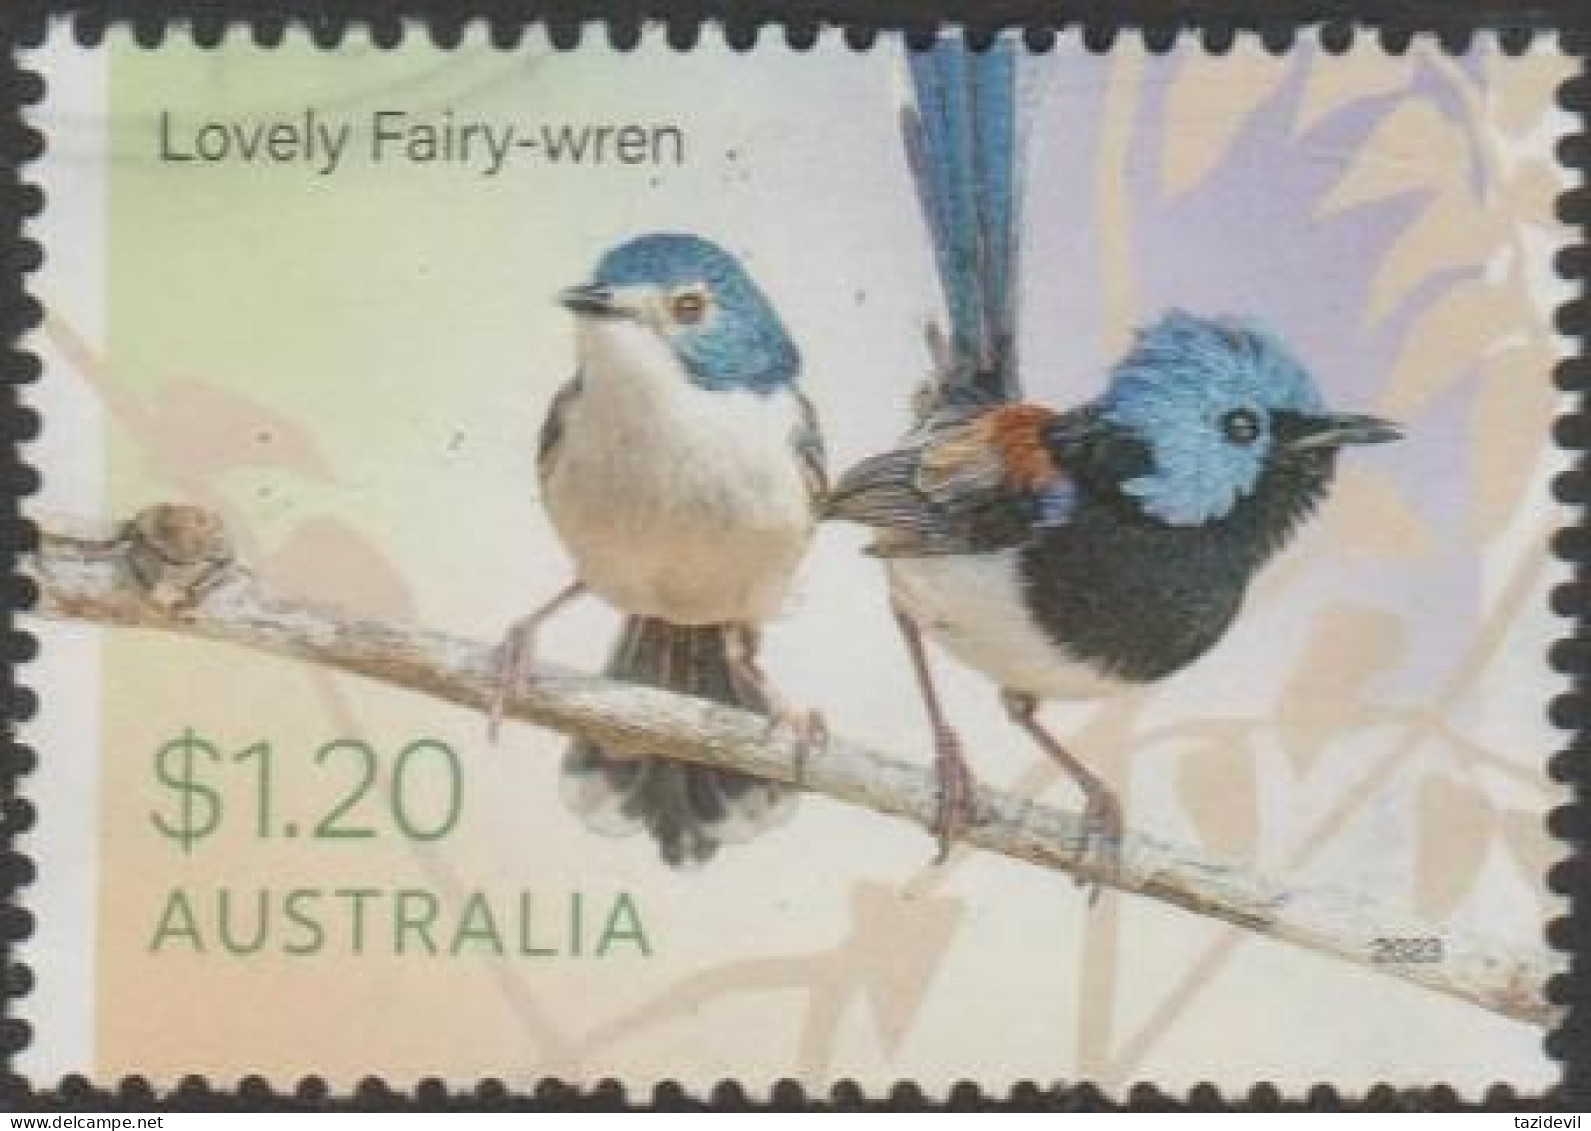 AUSTRALIA - USED 2023 $1.20 Fairy-Wrens - Lovely Fairy-Wren - Usados